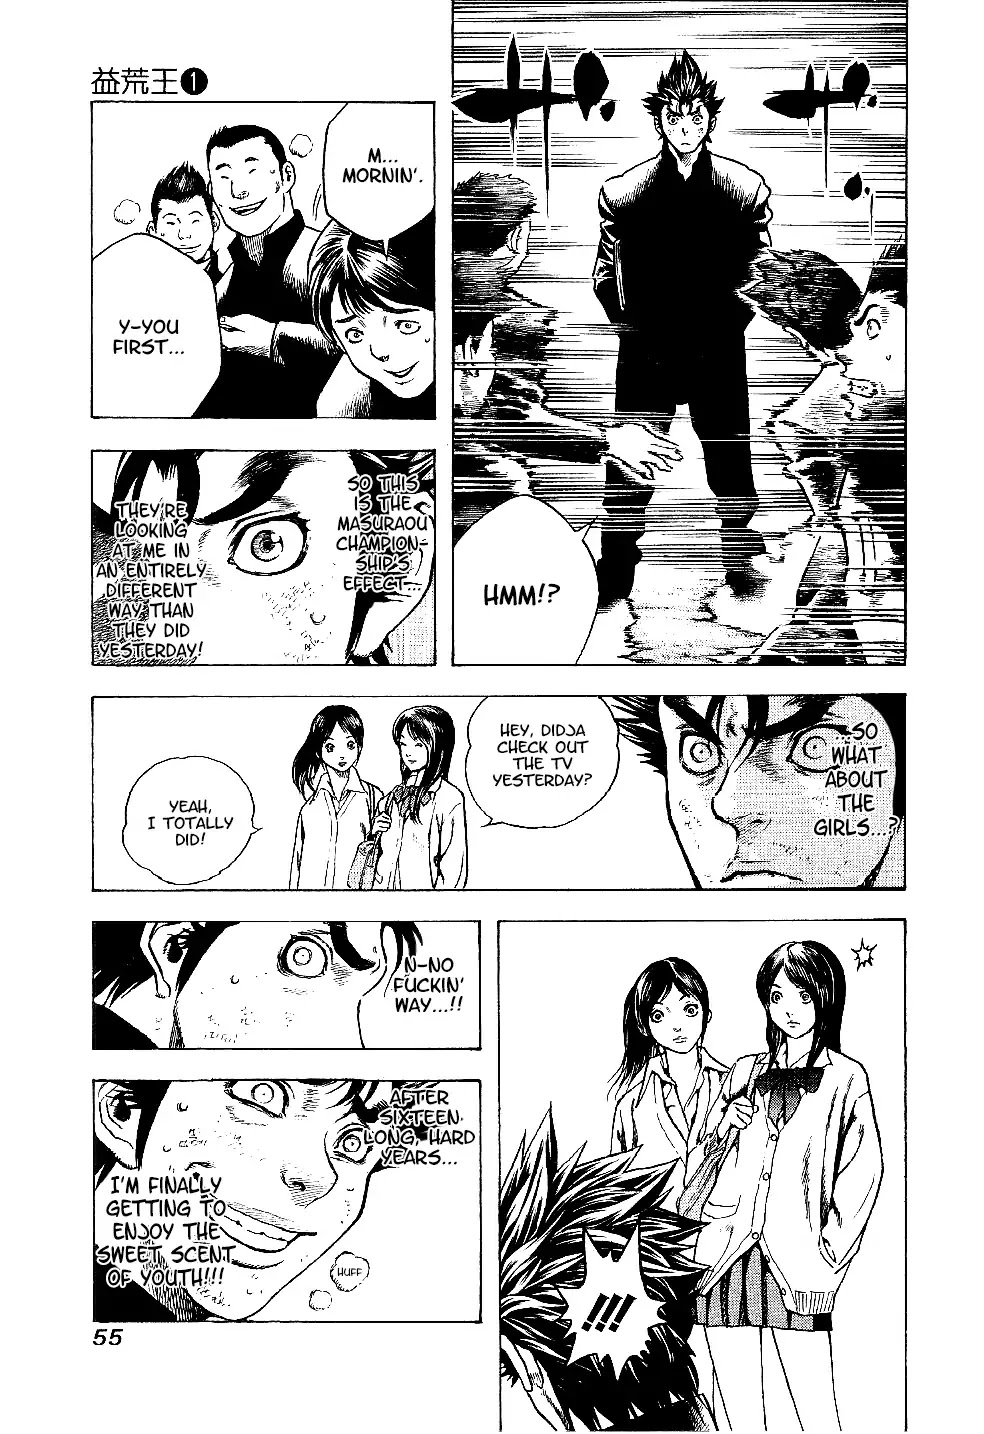 Masuraou - Page 3